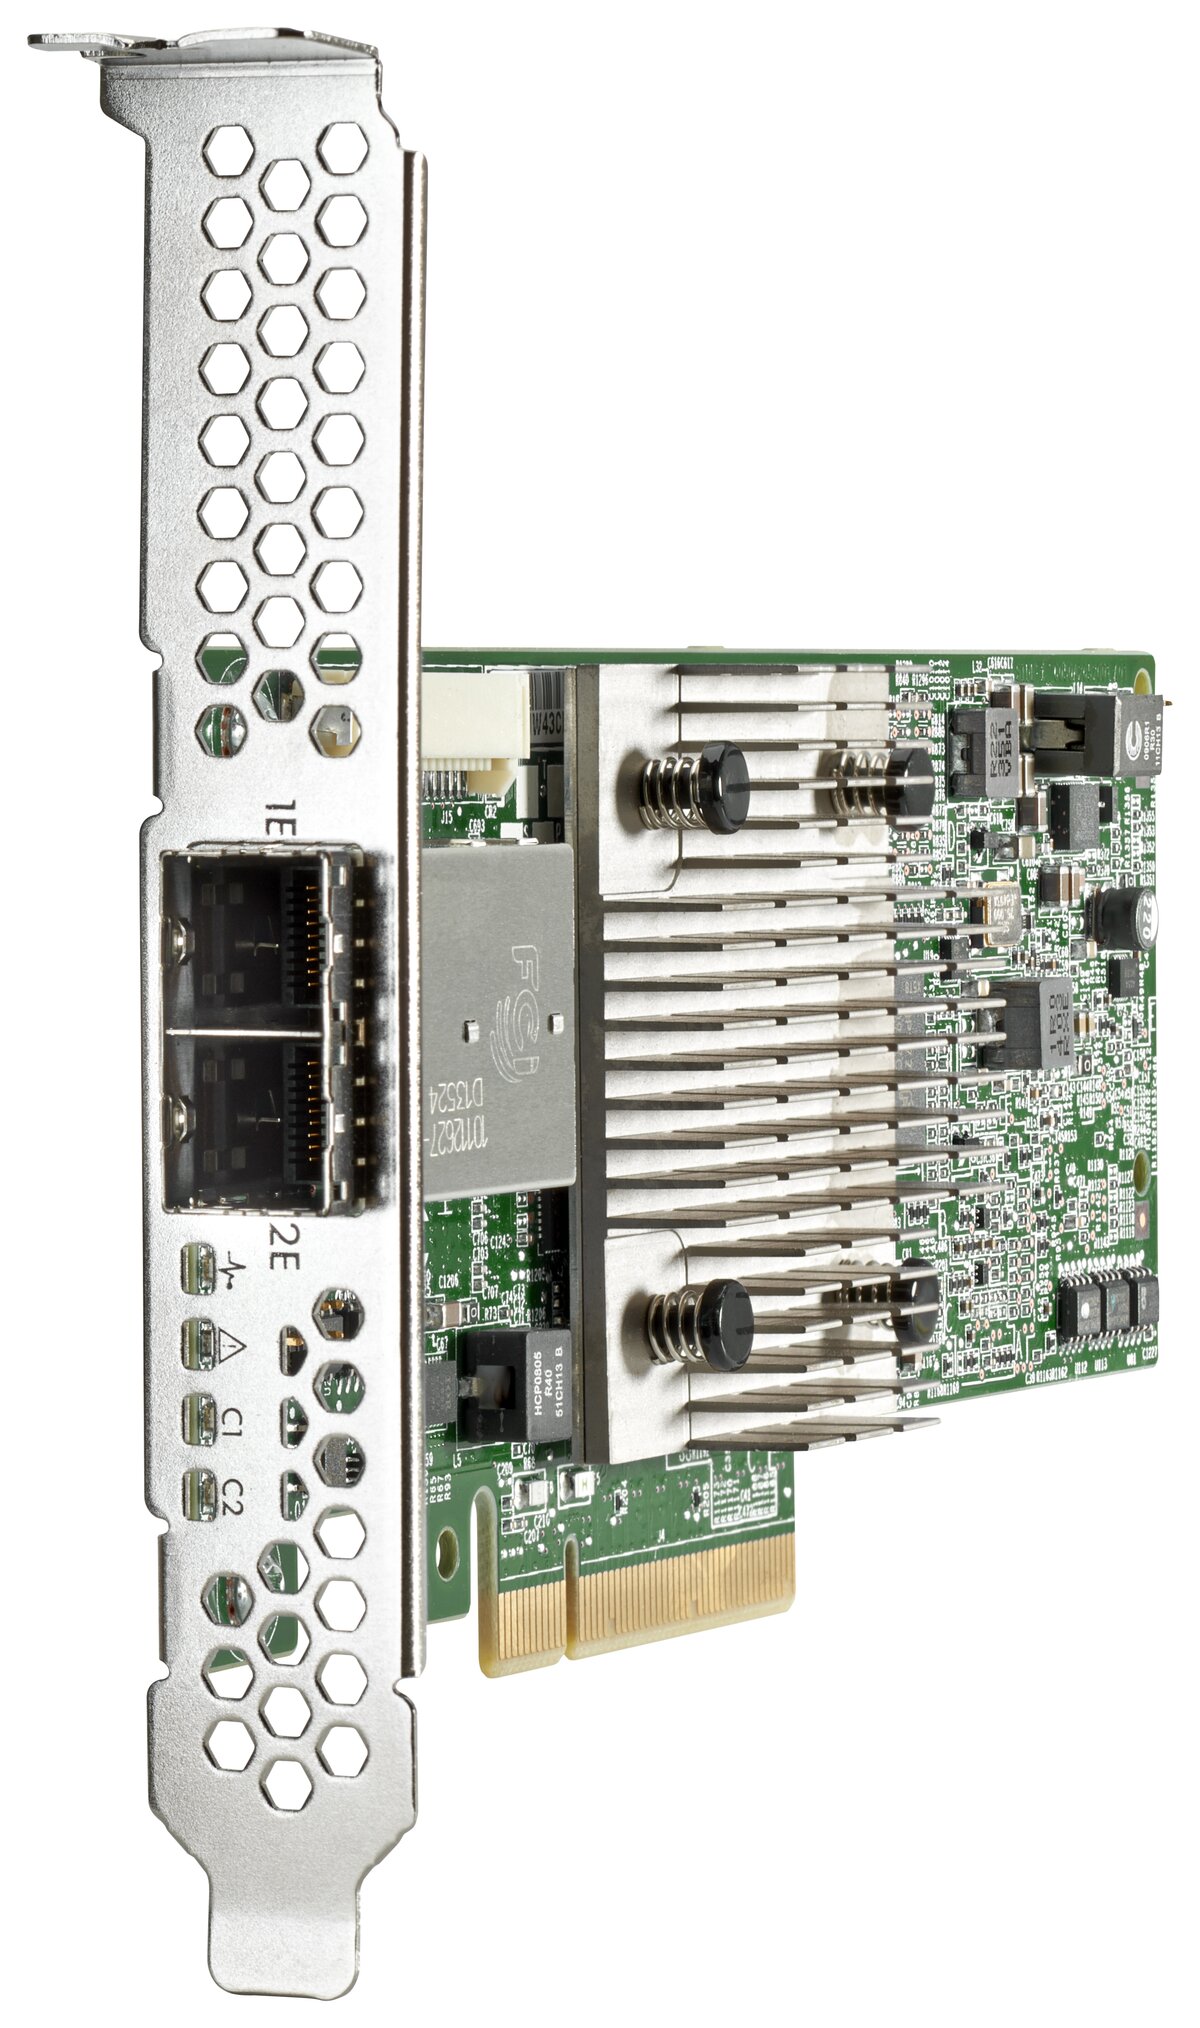 16301円 お得なキャンペーンを実施中 Hewlett Packard Enterprise H240 12Gb 2-ports Int Smart Host Bus Adapter